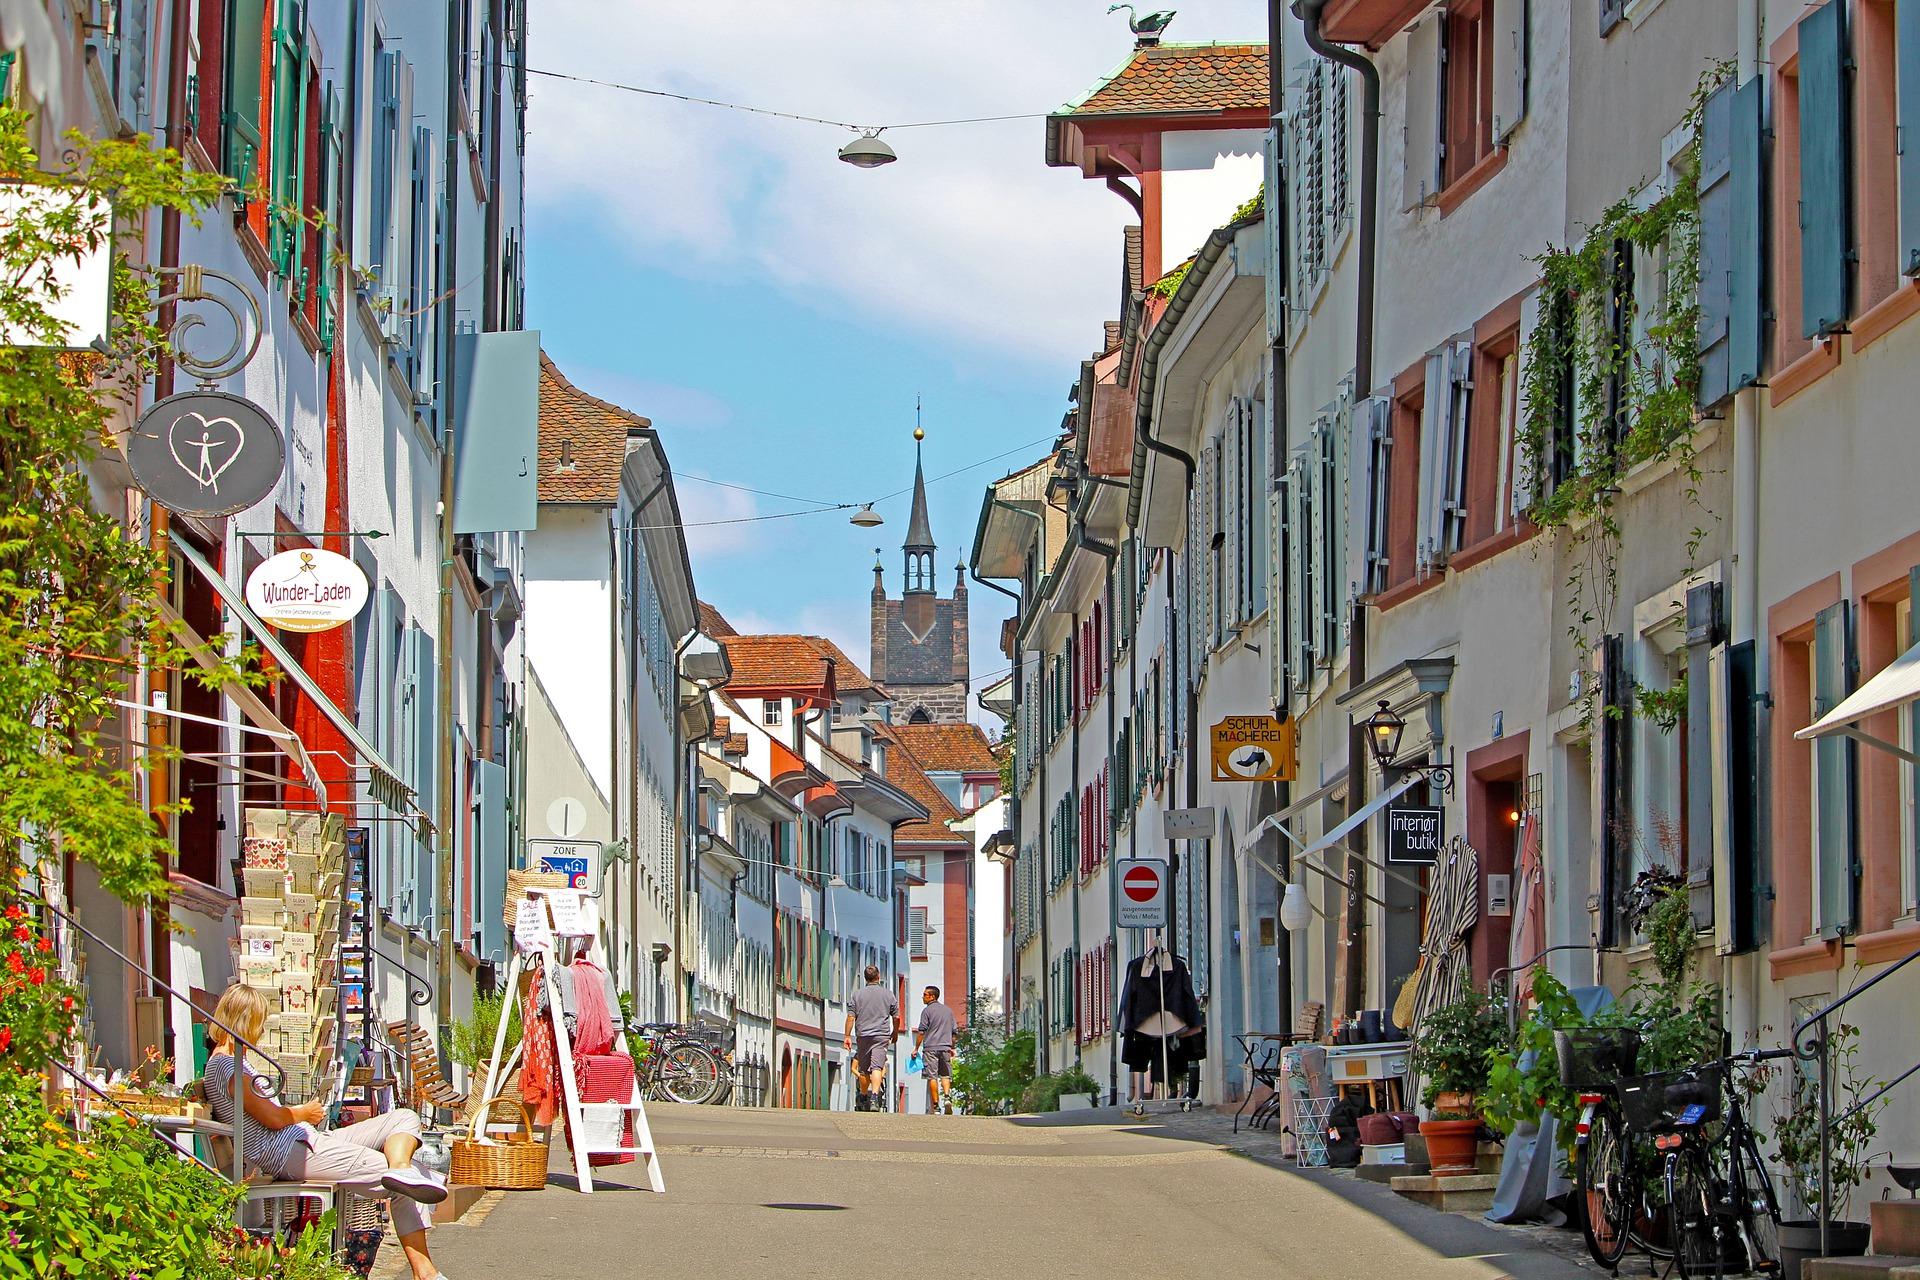 Bild Straße mit Läden, Quelle: Bild von Birgit Böllinger auf Pixabay